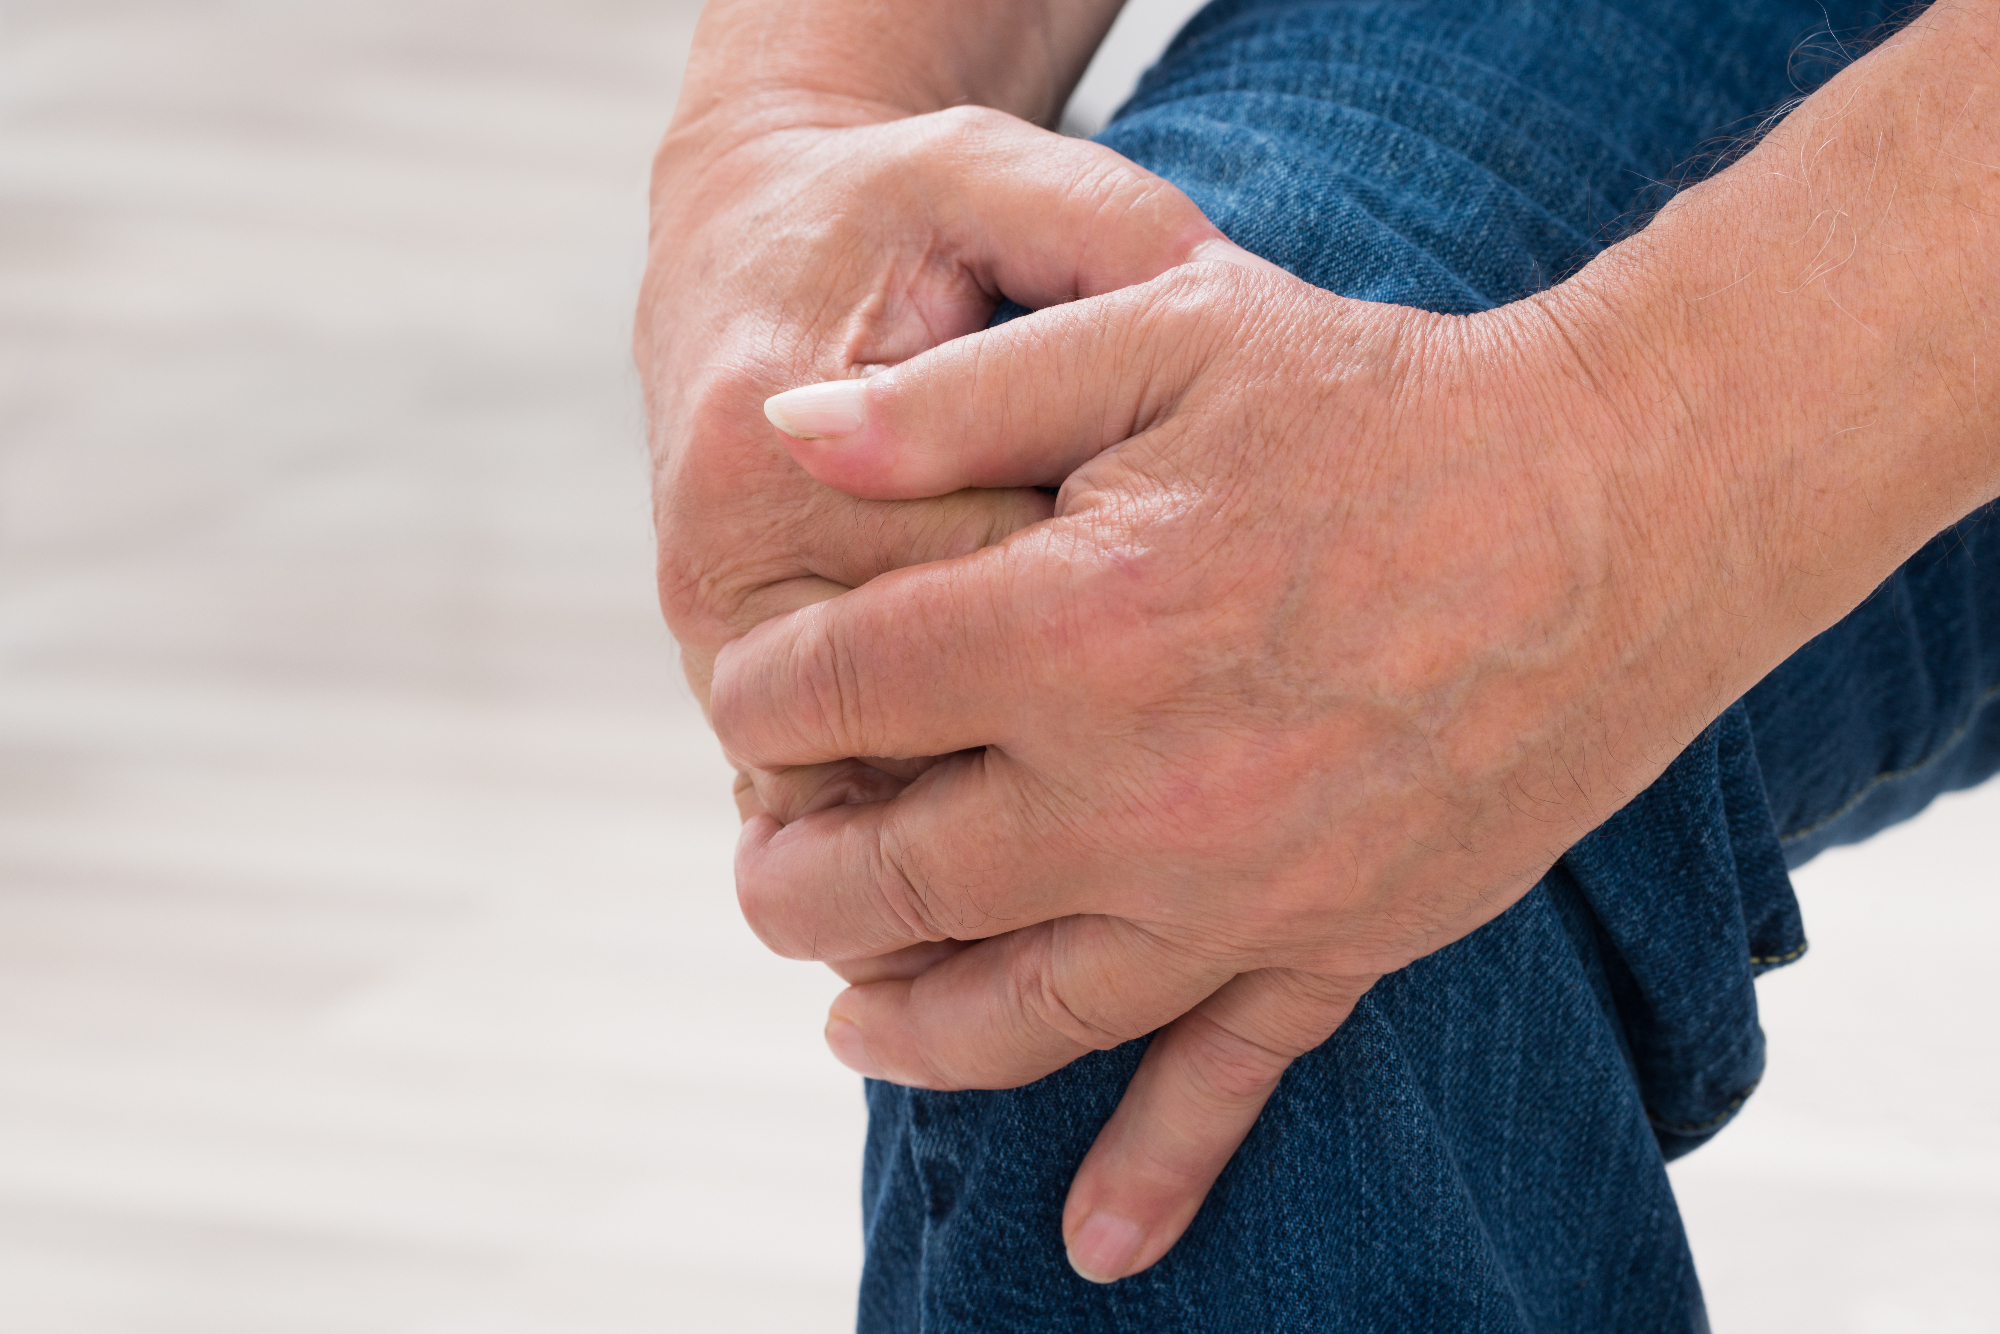 Revmatoidni artritis je nekaj kar se lahko zelo hitro pojavi